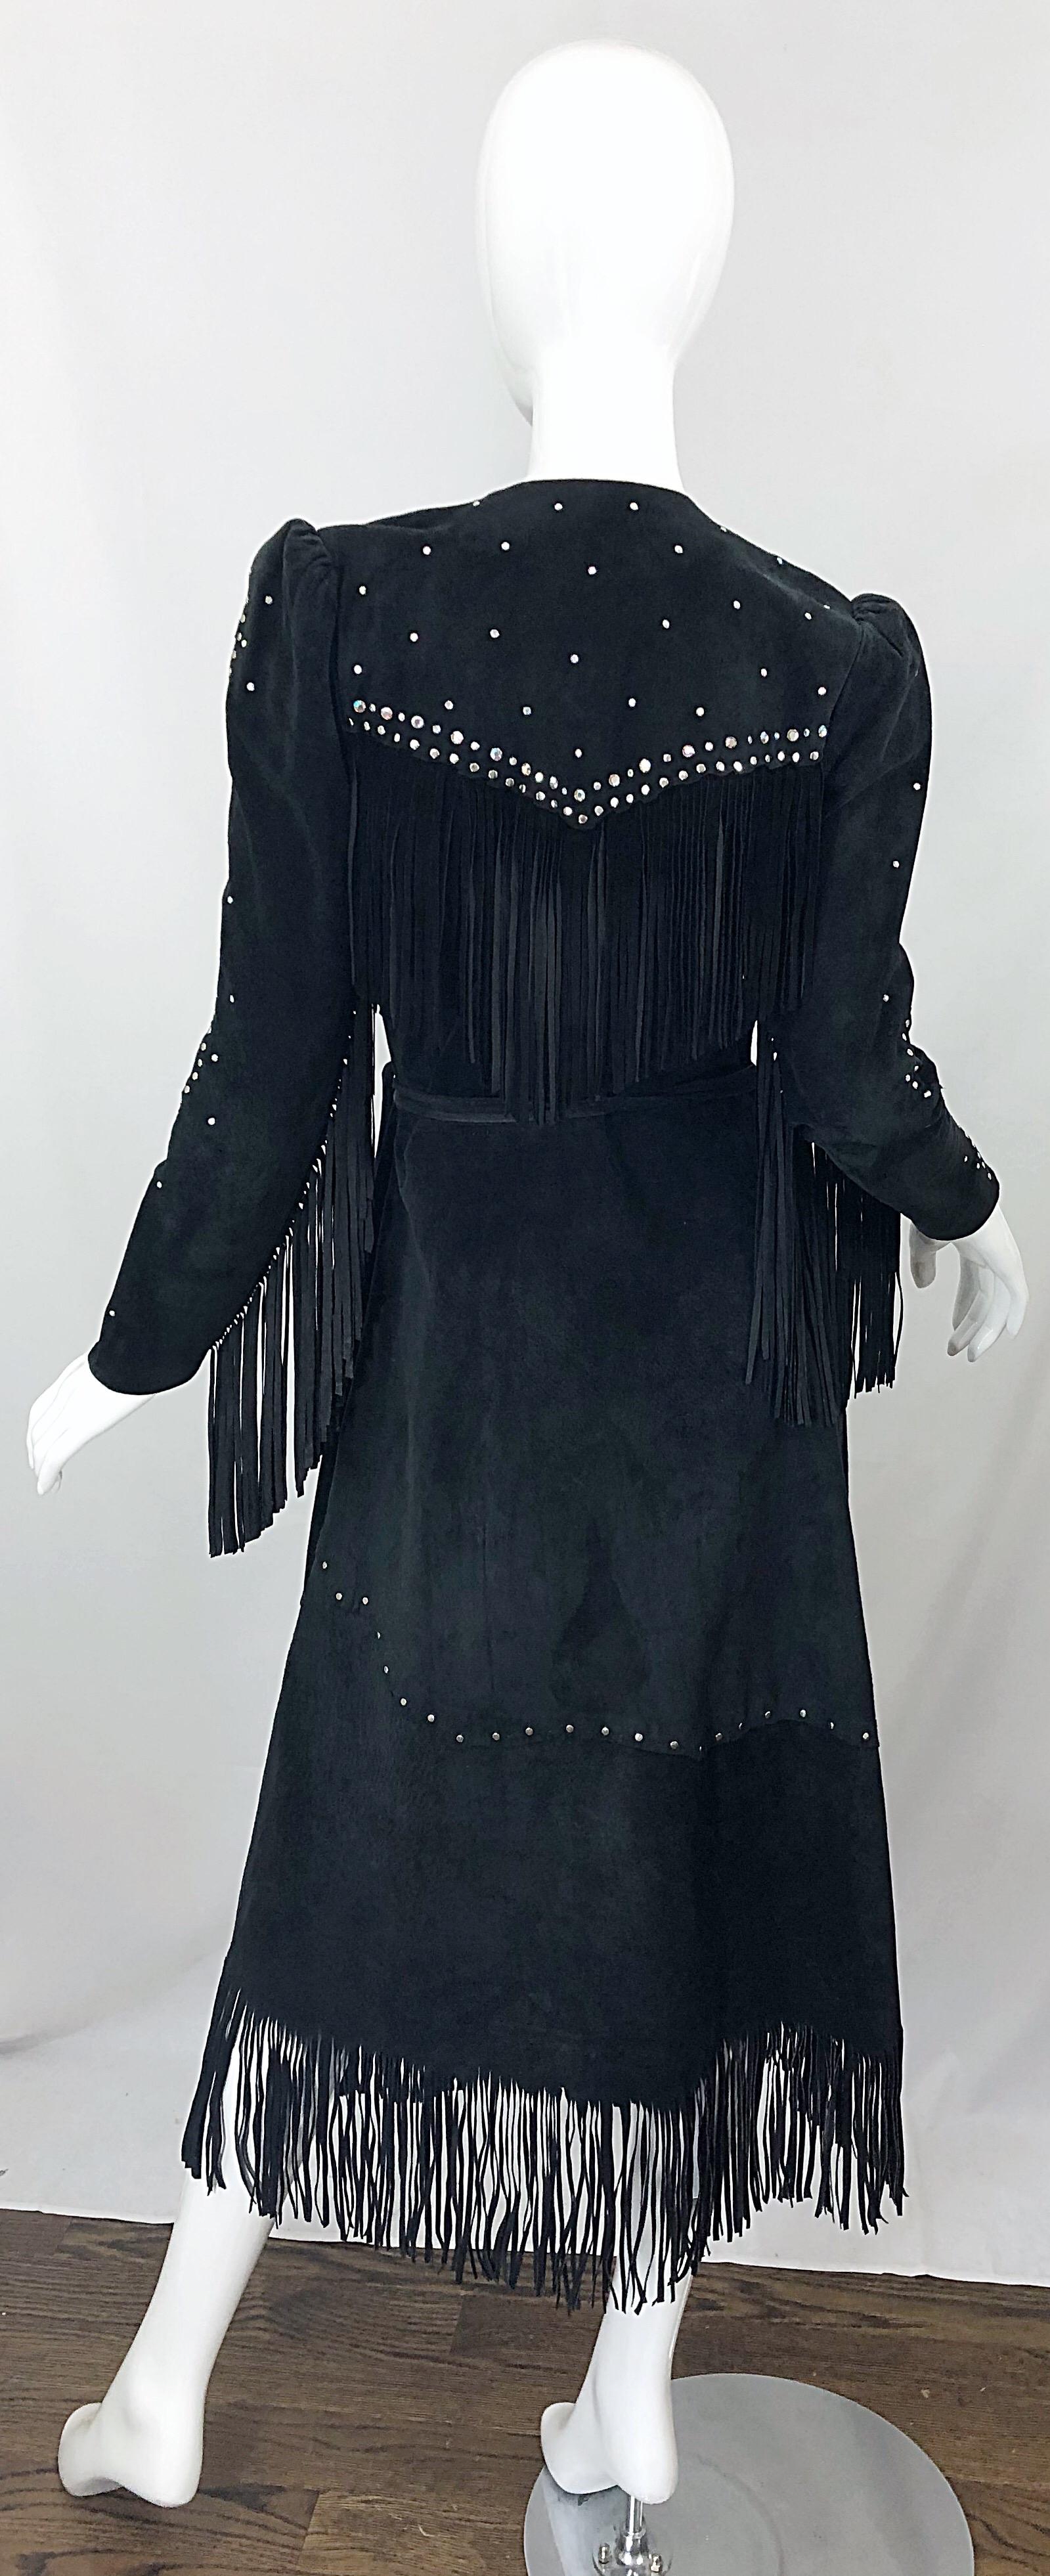 Noir Love, Melody Sabatasso - Robe portefeuille cloutée à franges en daim noir et strass, années 1970 en vente